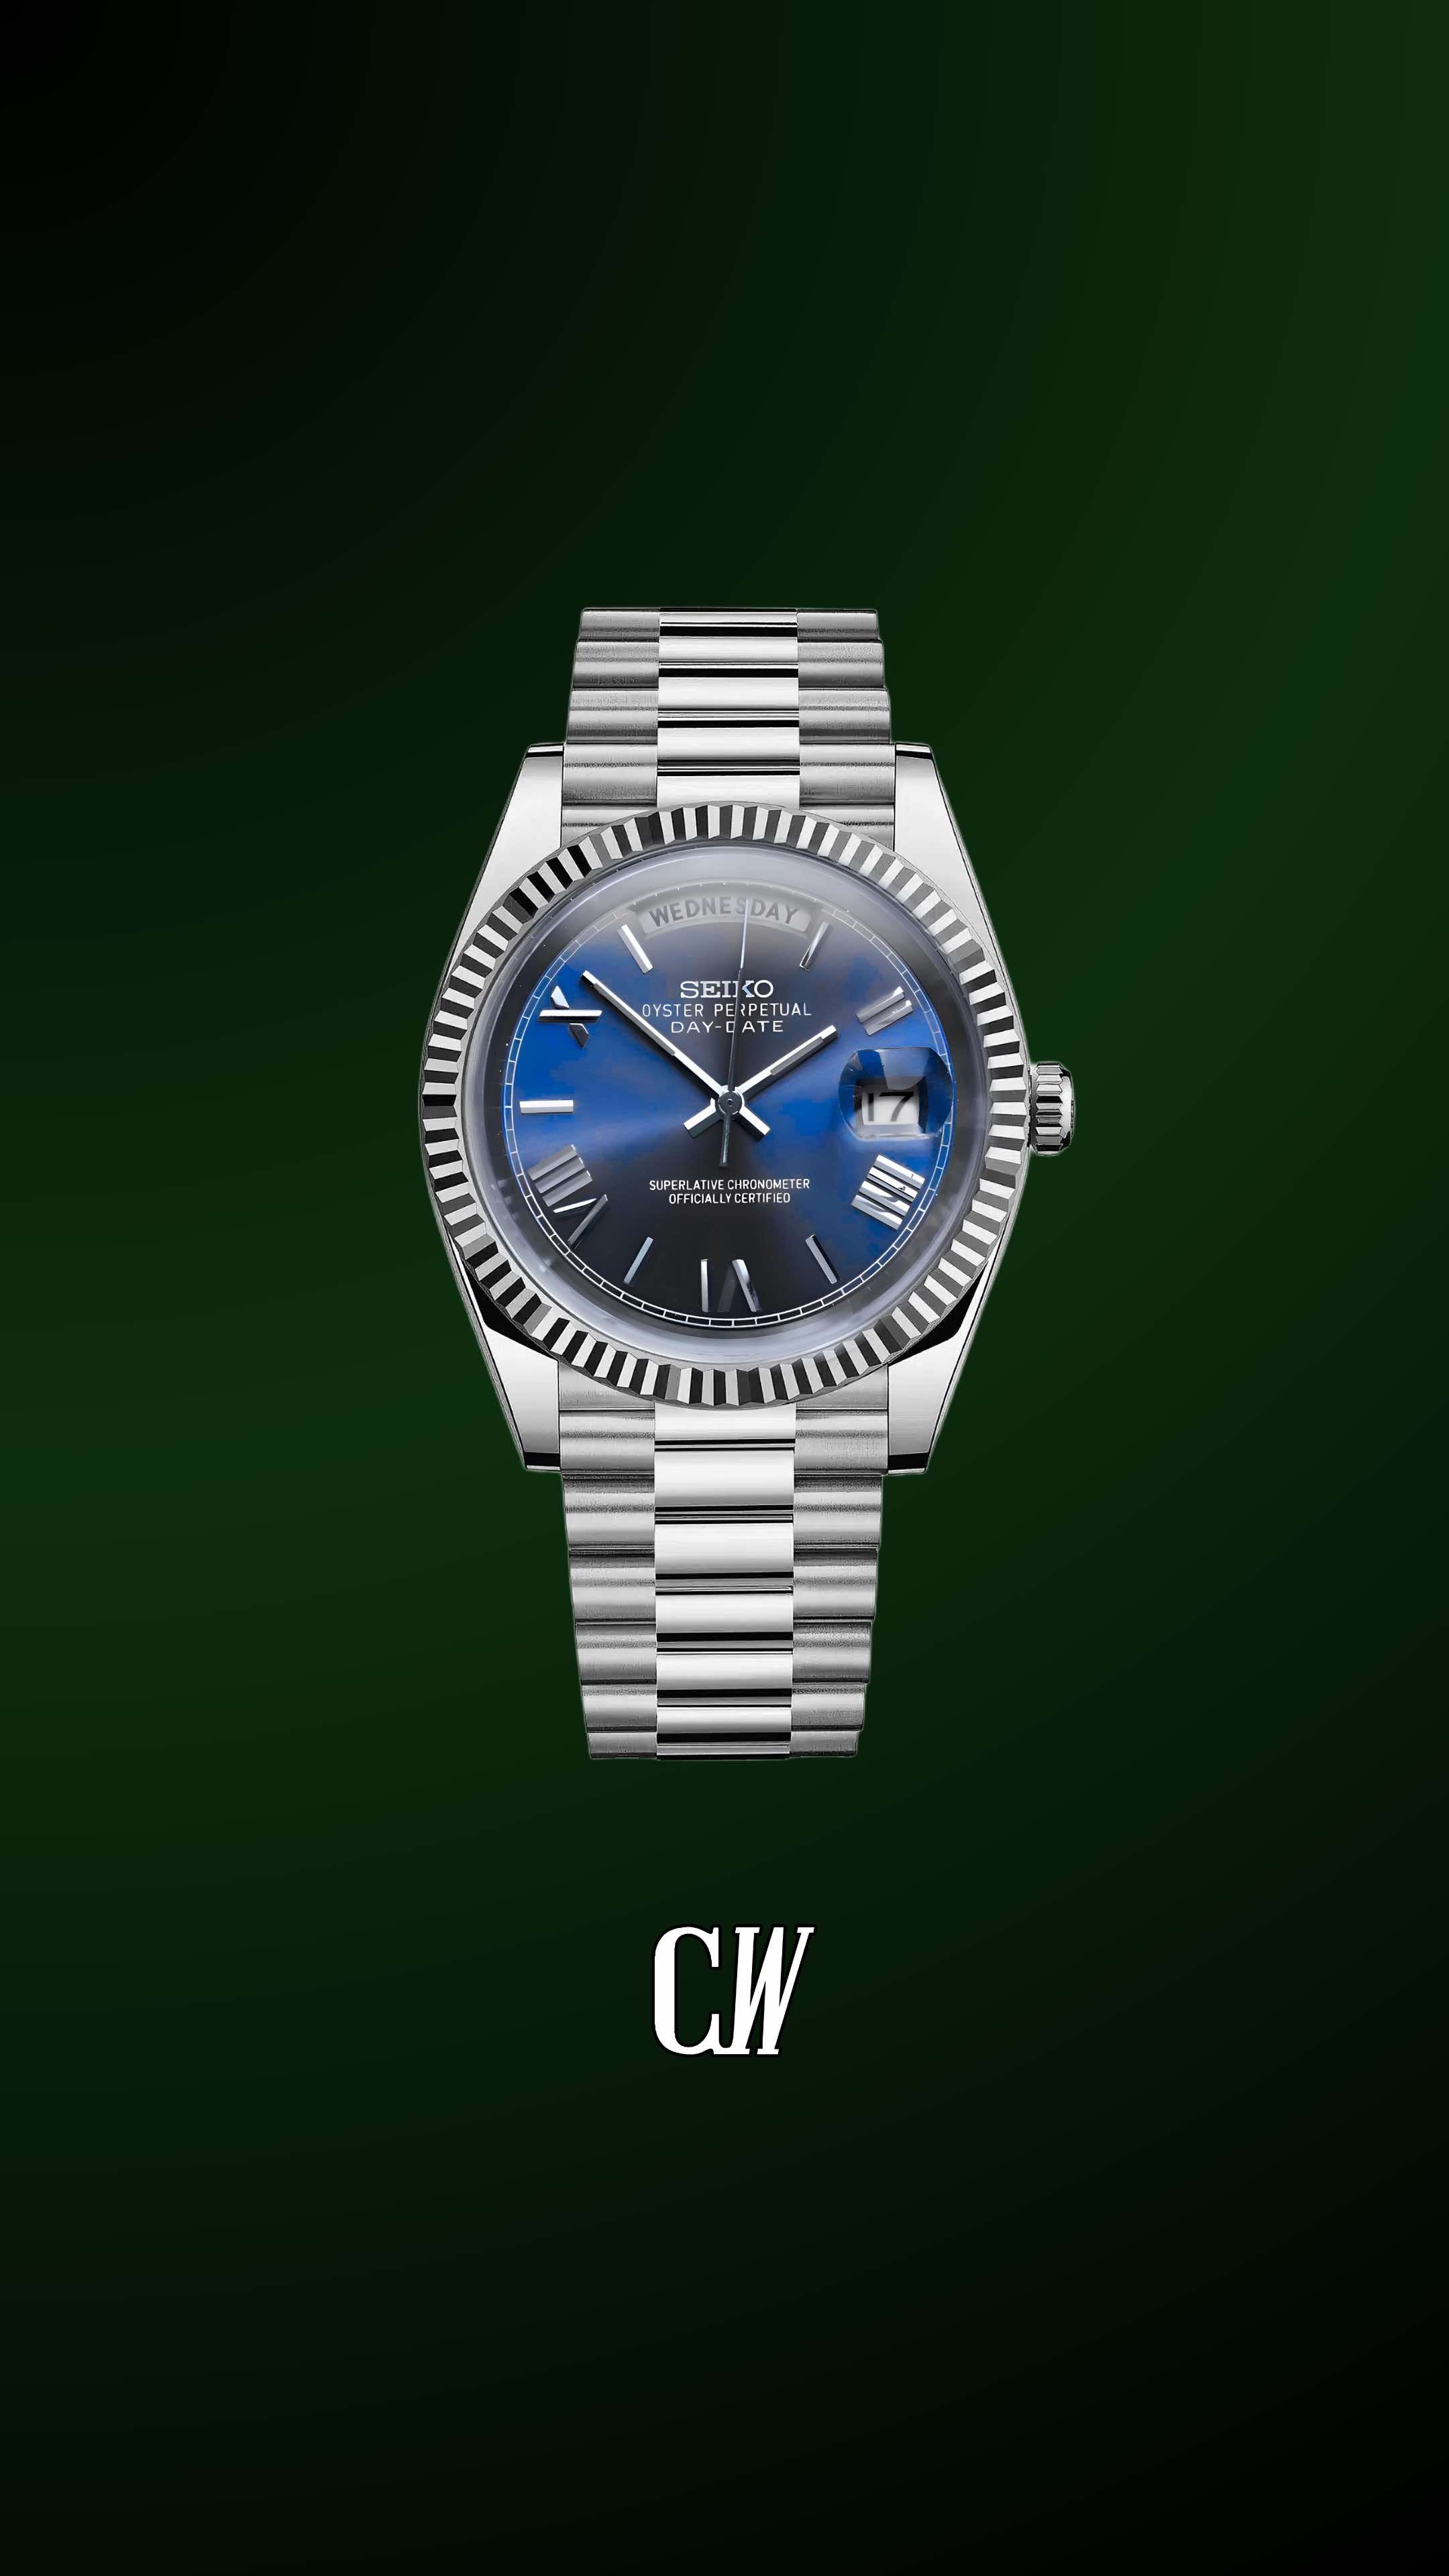 Seiko mod daydate blue automatic watch